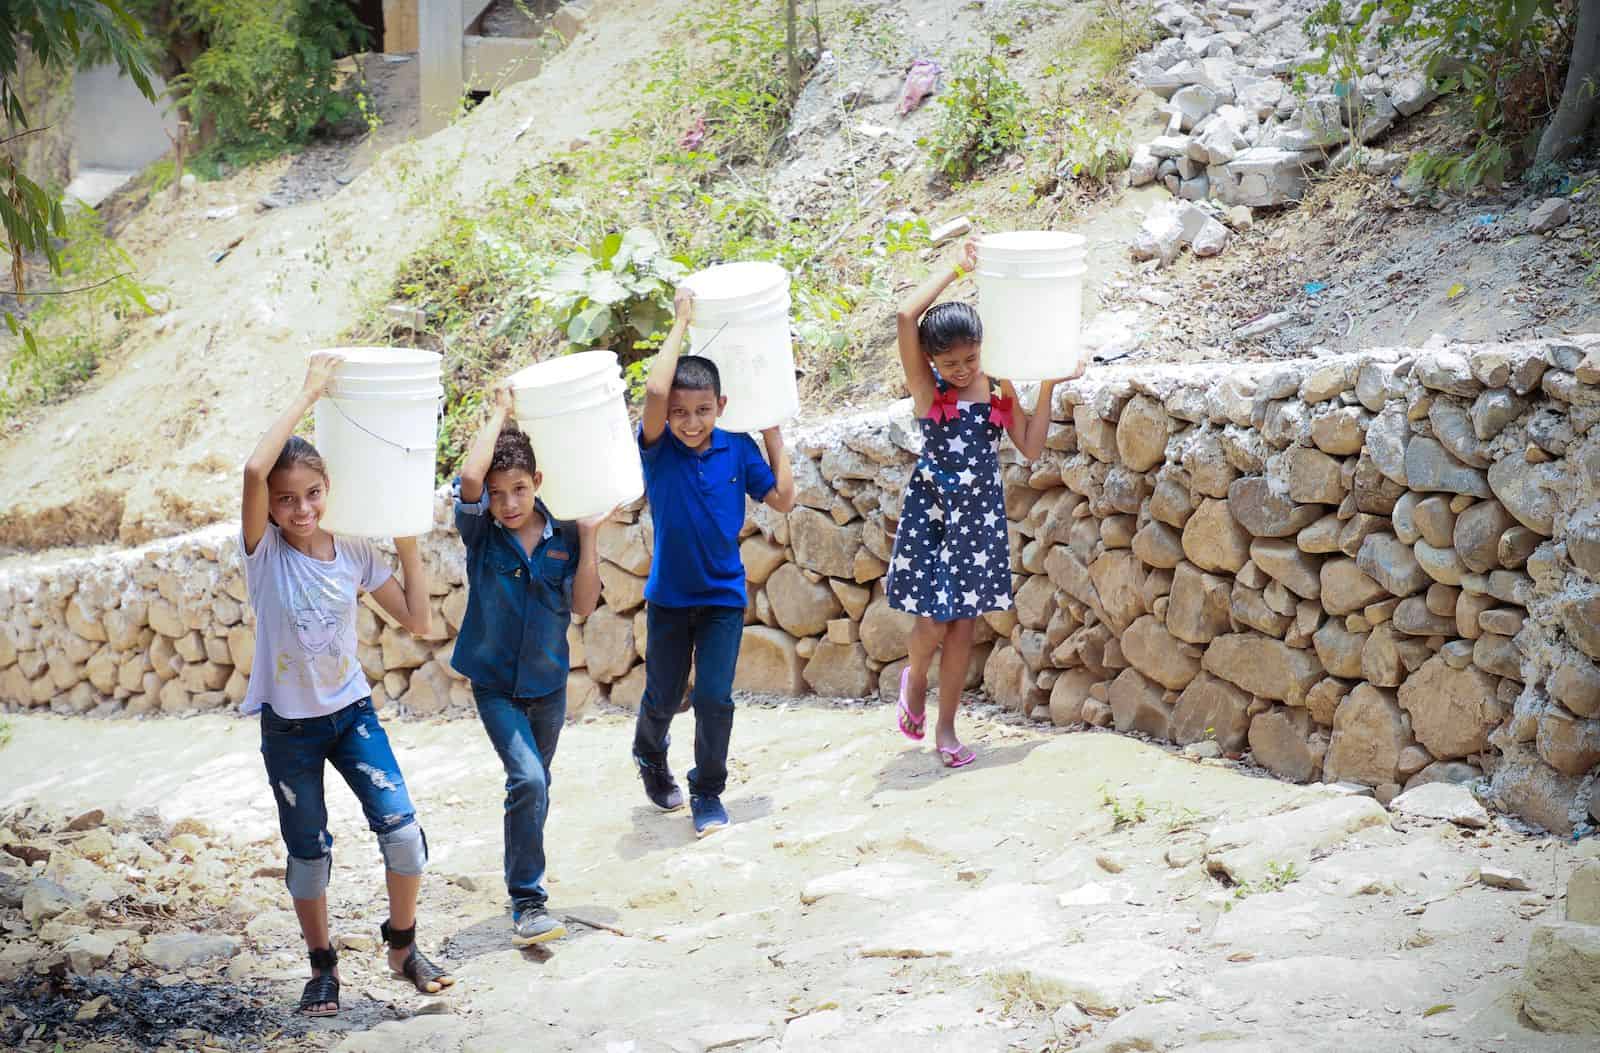 Four children walk up a hill carrying water buckets